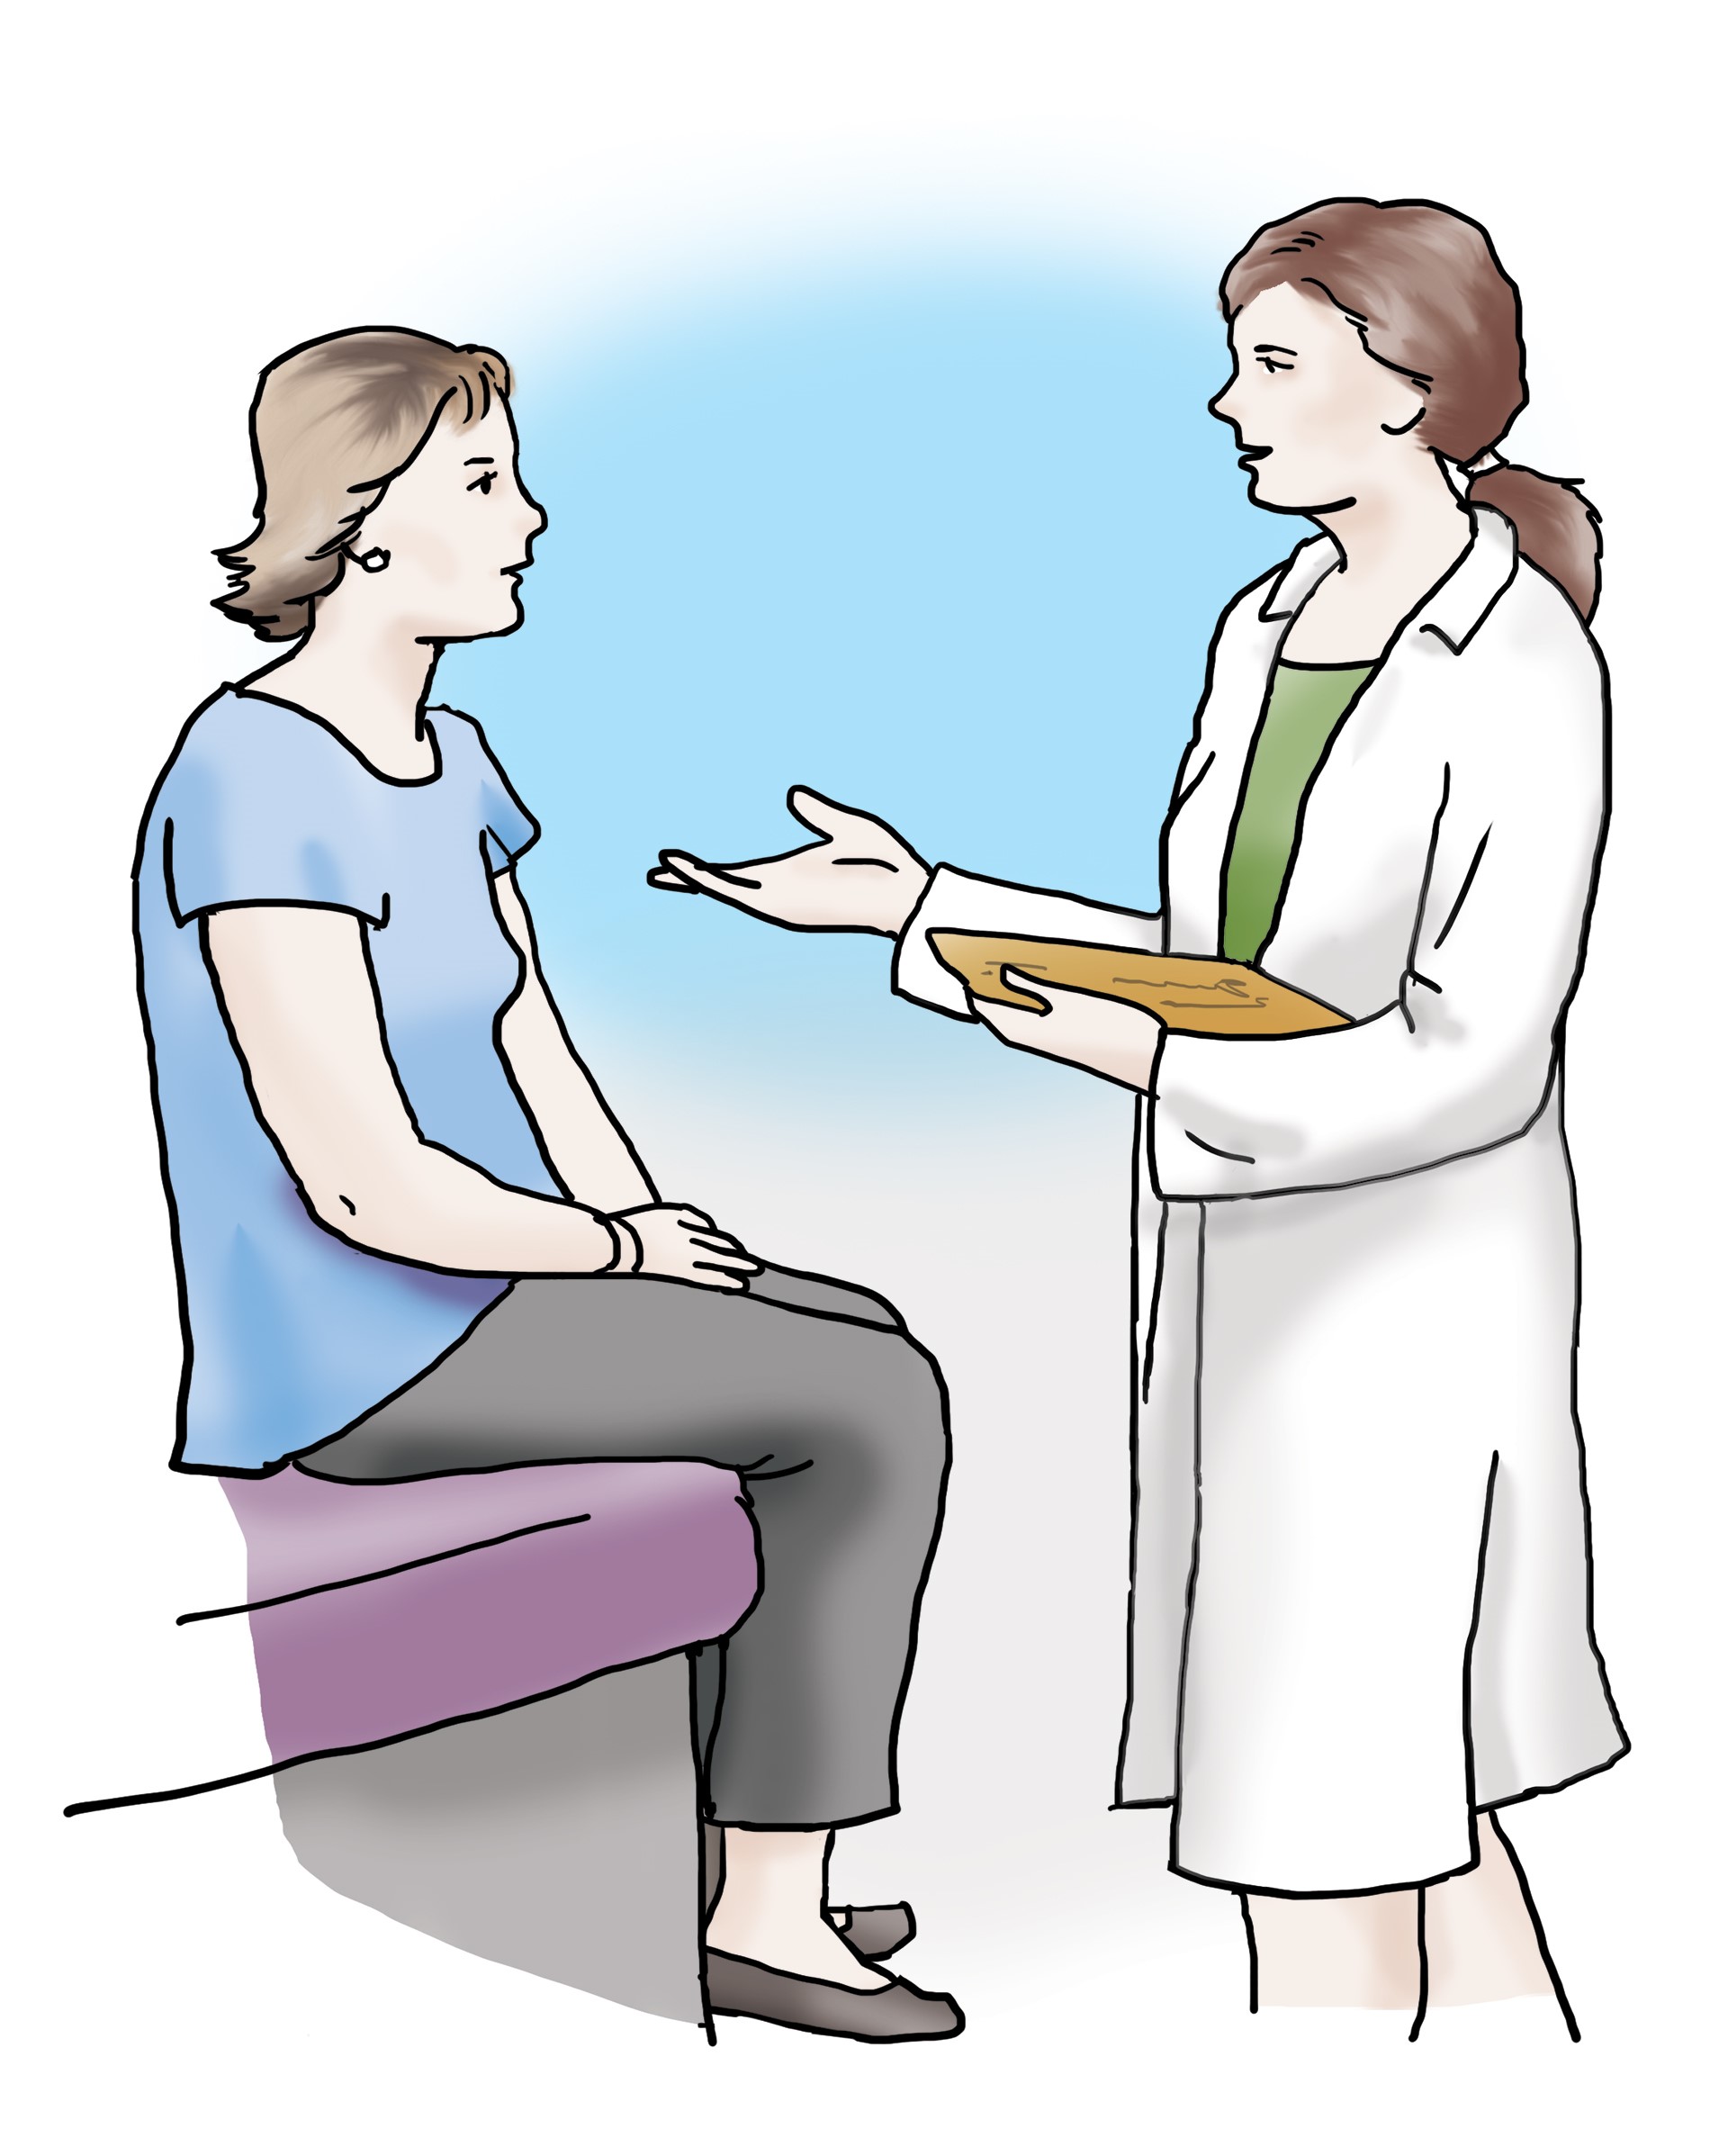 Eine Ärztin unterhält sich mit ihrer Patientin. Die Ärztin erklärt der Patientin etwas und hat ein Klemmbrett in der Hand. 